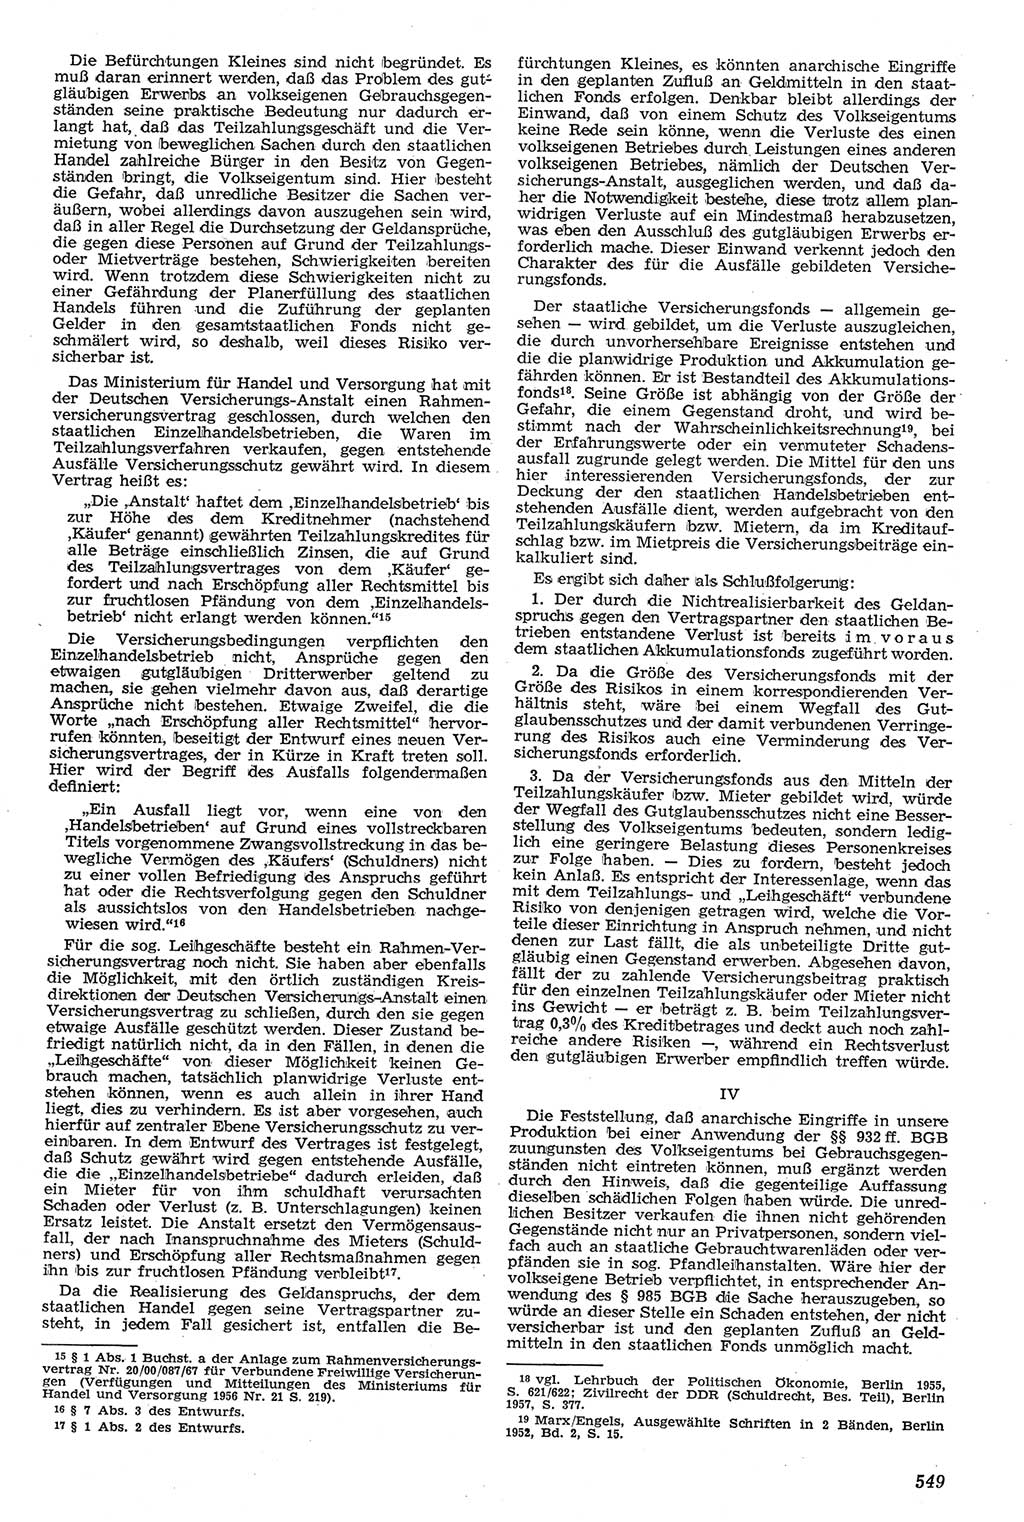 Neue Justiz (NJ), Zeitschrift für Recht und Rechtswissenschaft [Deutsche Demokratische Republik (DDR)], 11. Jahrgang 1957, Seite 549 (NJ DDR 1957, S. 549)